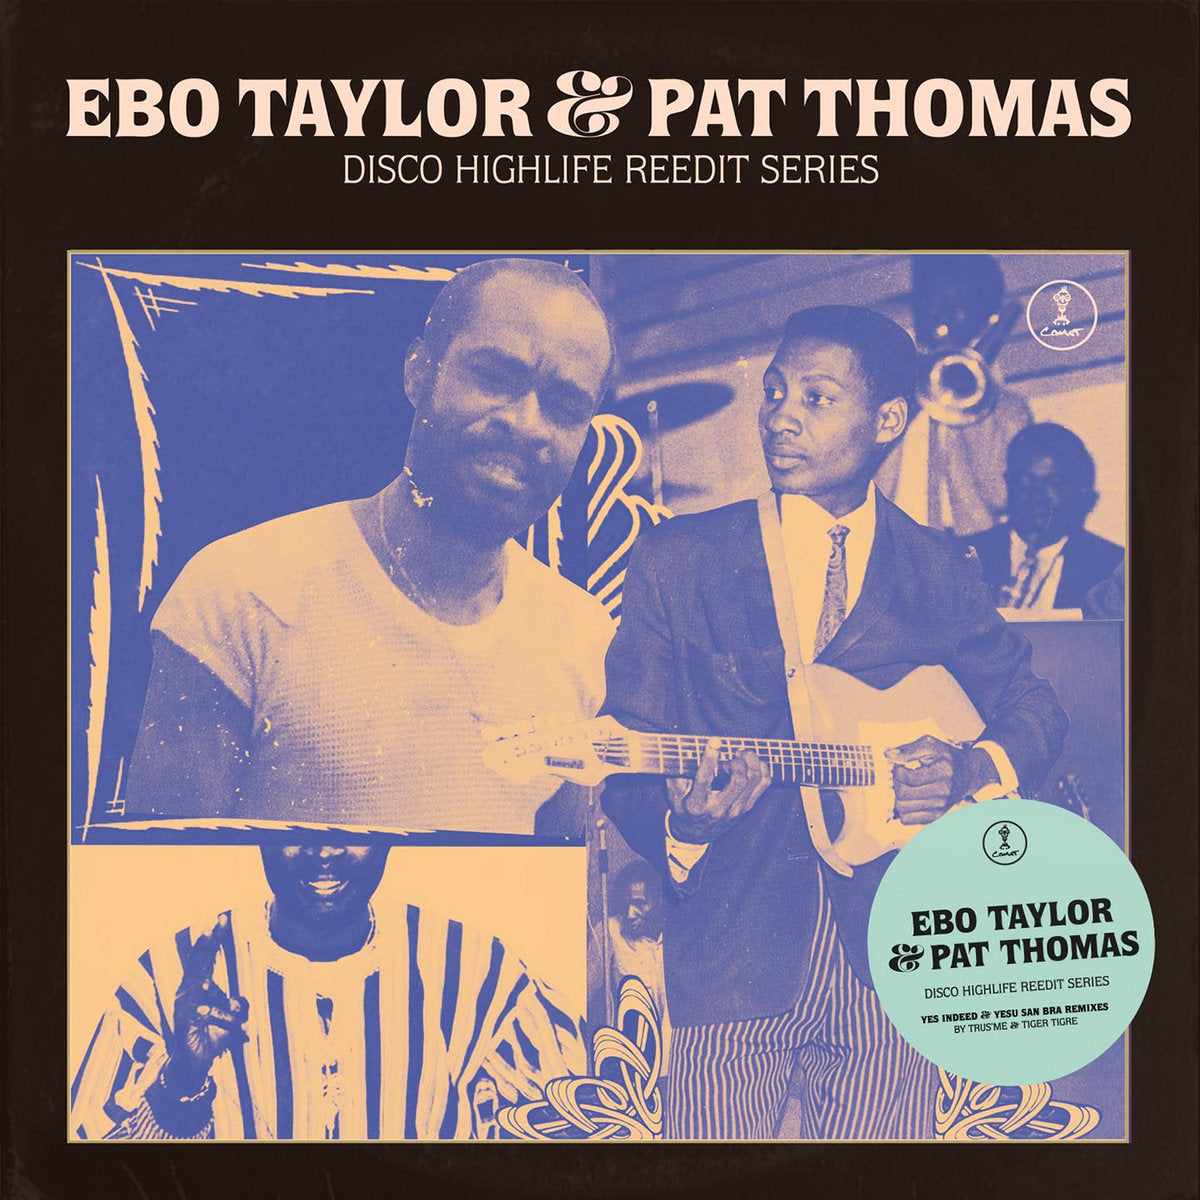 Ebo Taylor & Pat Thomas - Disco Highlife Reedit Series Vol. 3 - 12“